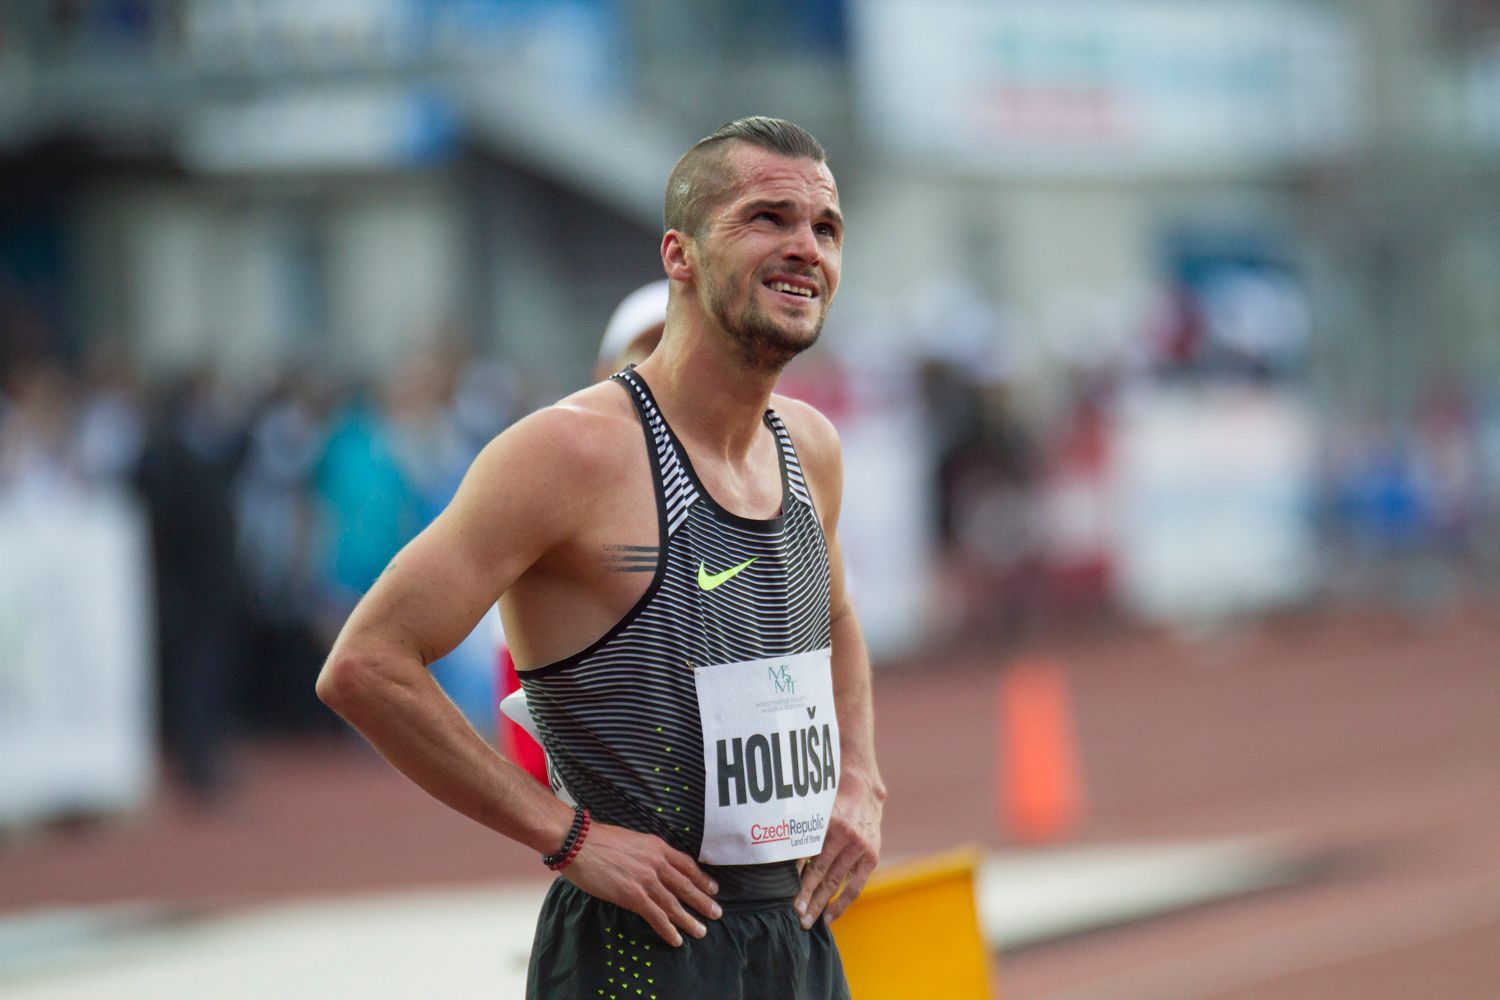 Zlatá tretra 2016: Jakub Holuša - 1500 m